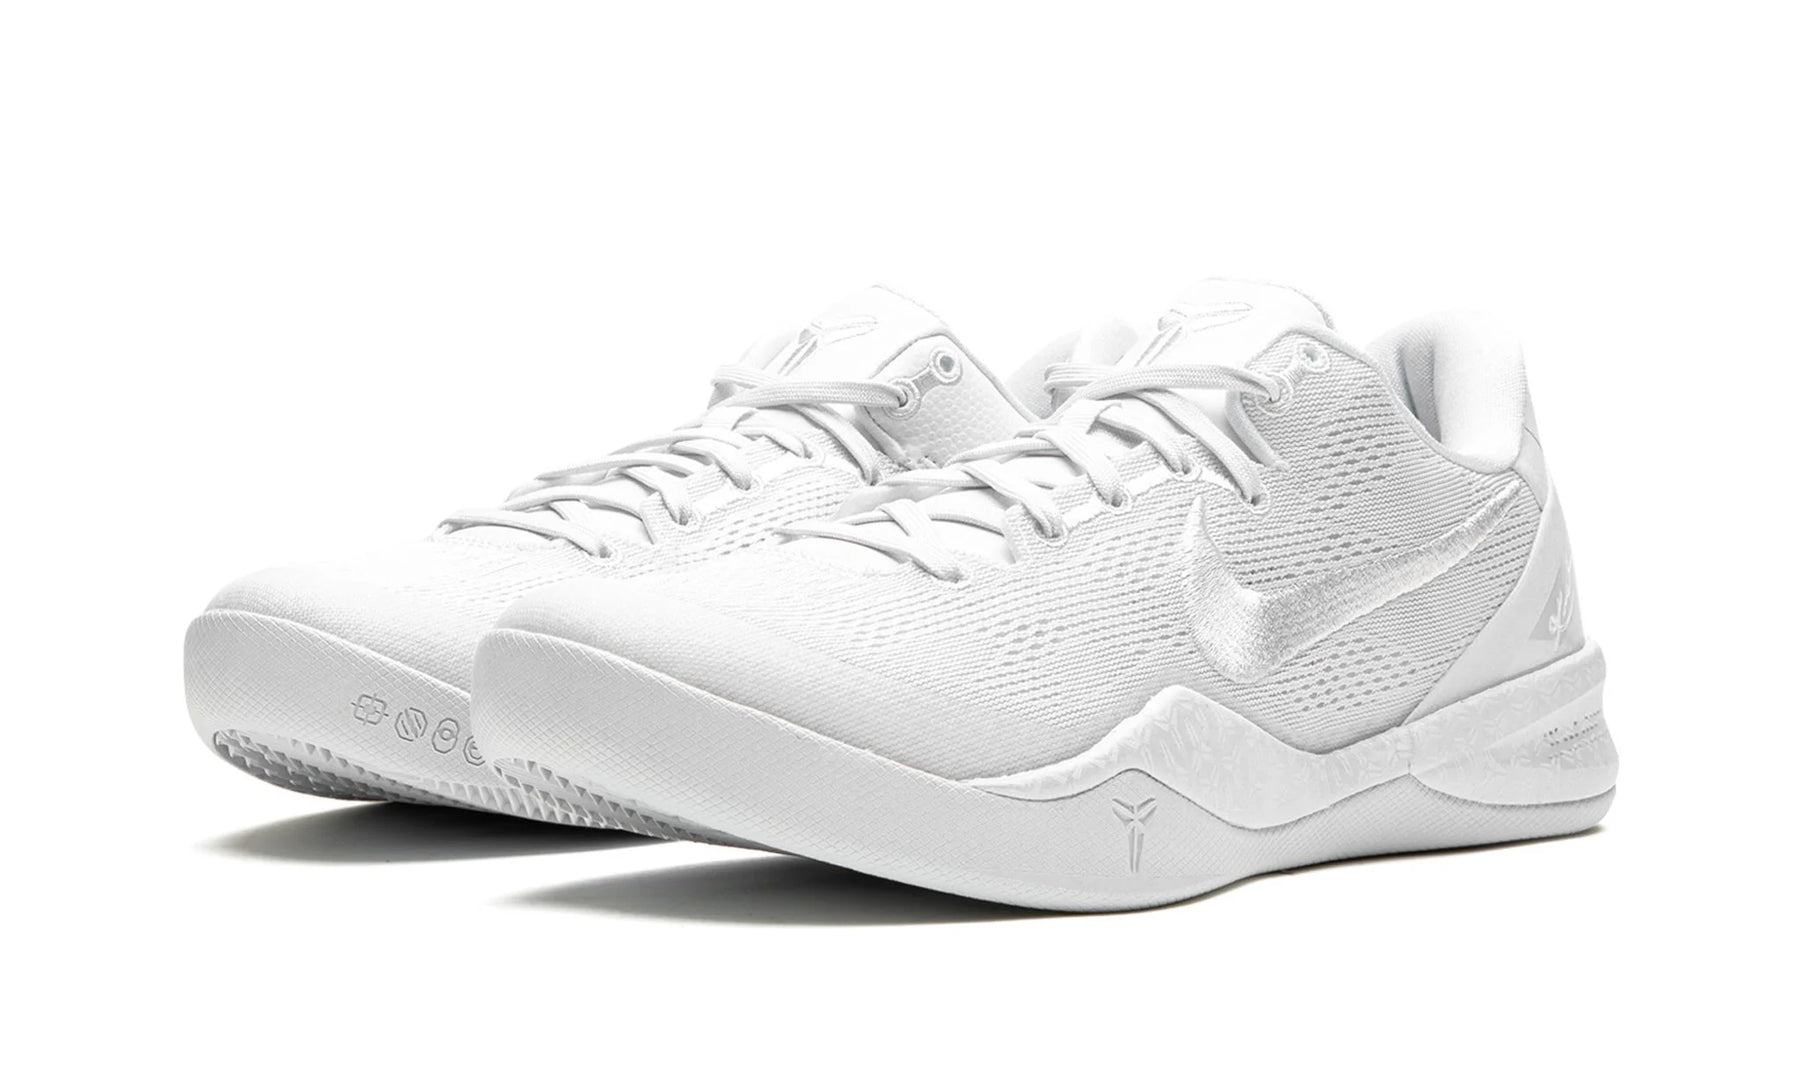 Nike Kobe 8 Protro "Triple White"